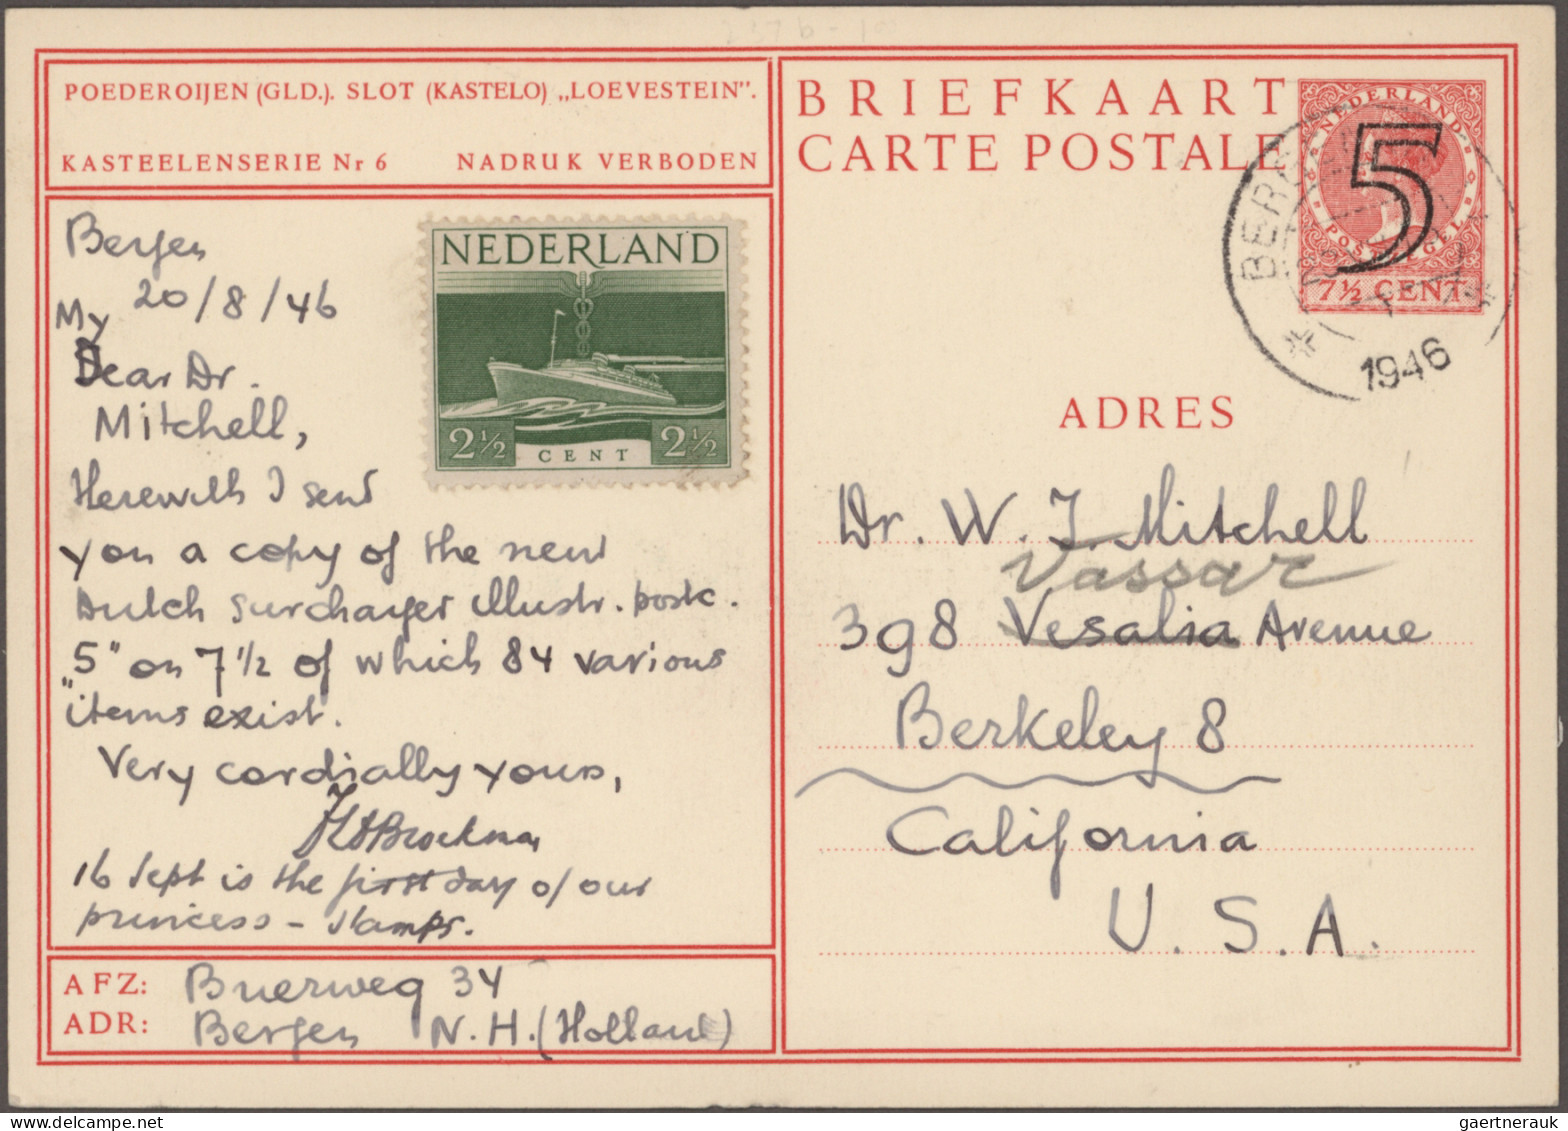 Netherlands - postal stationery: 1899-1946 - postal stationery picture postcards